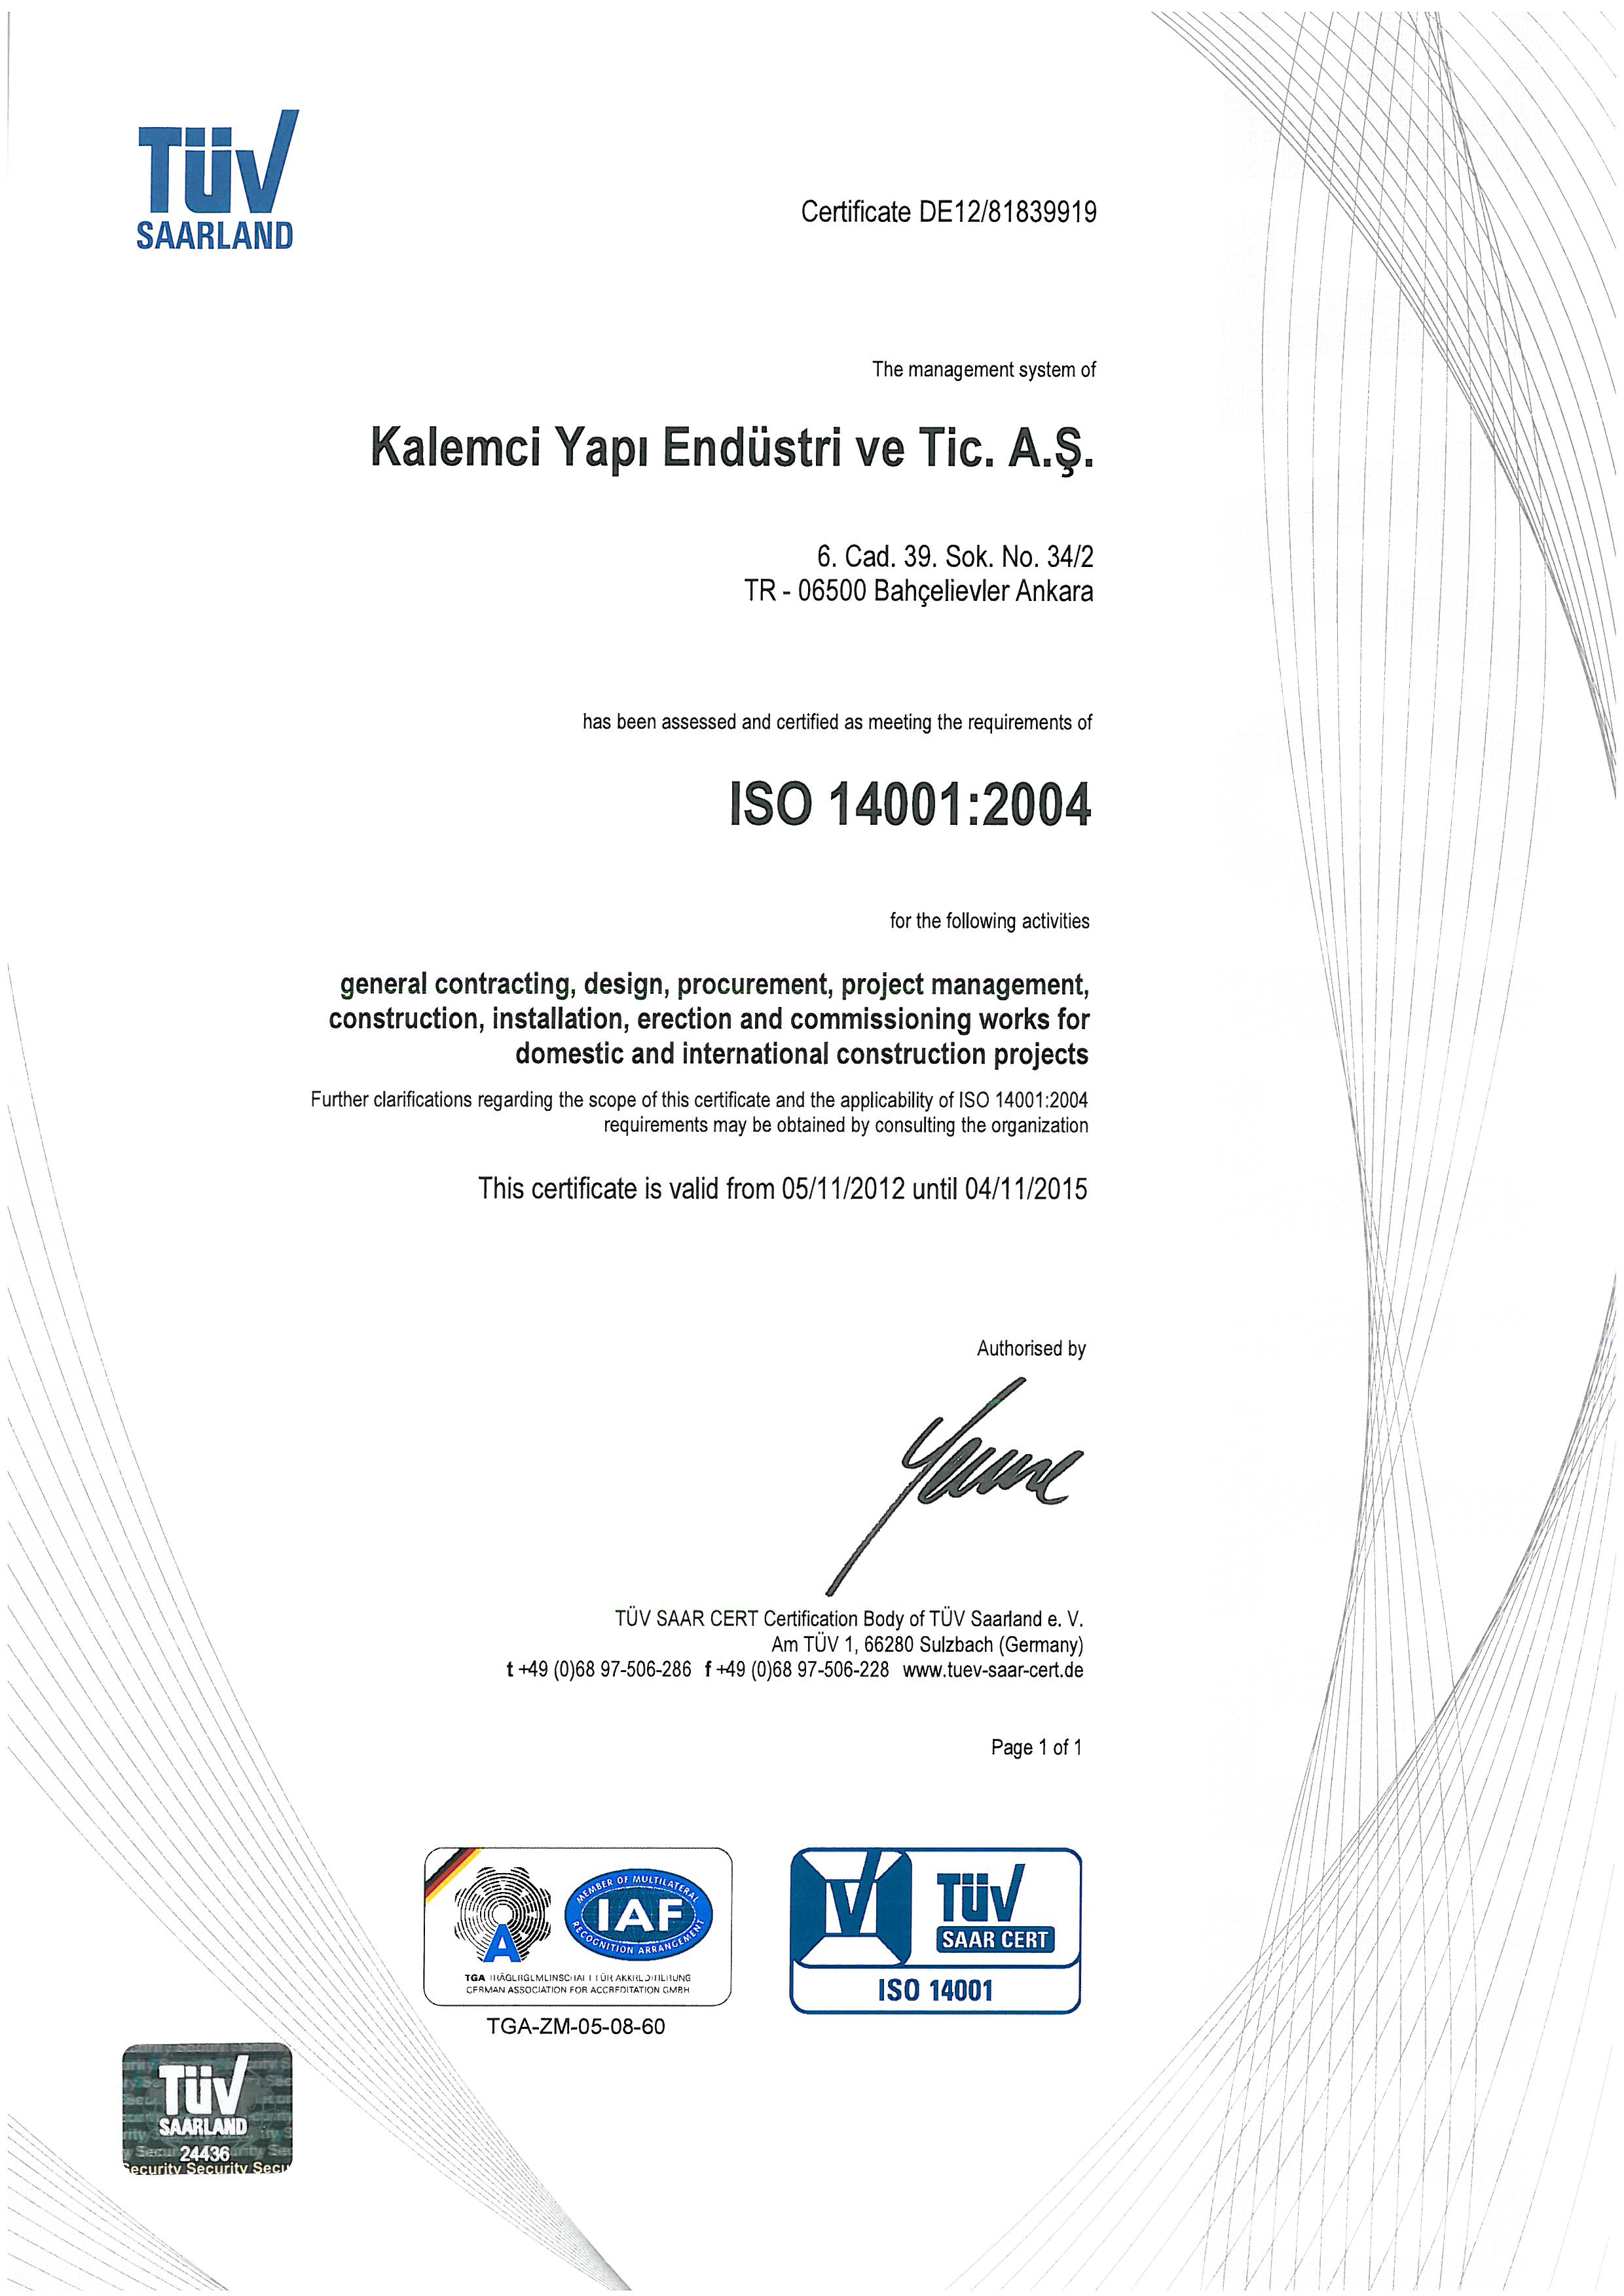 EN ISO 14001:2004